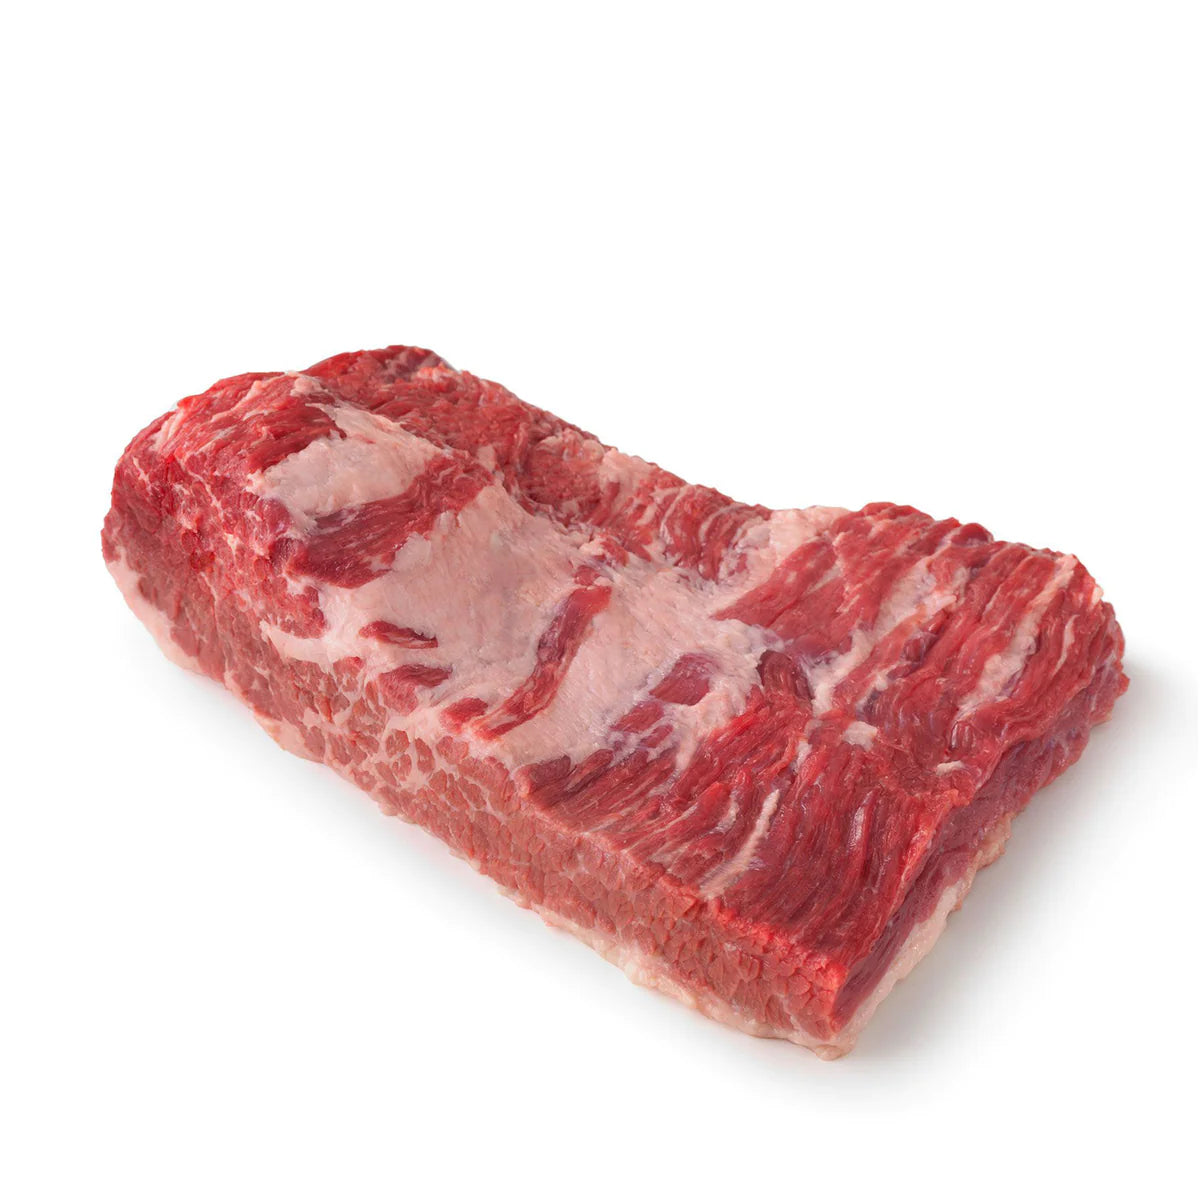 Beef - Brisket 2nd Cut